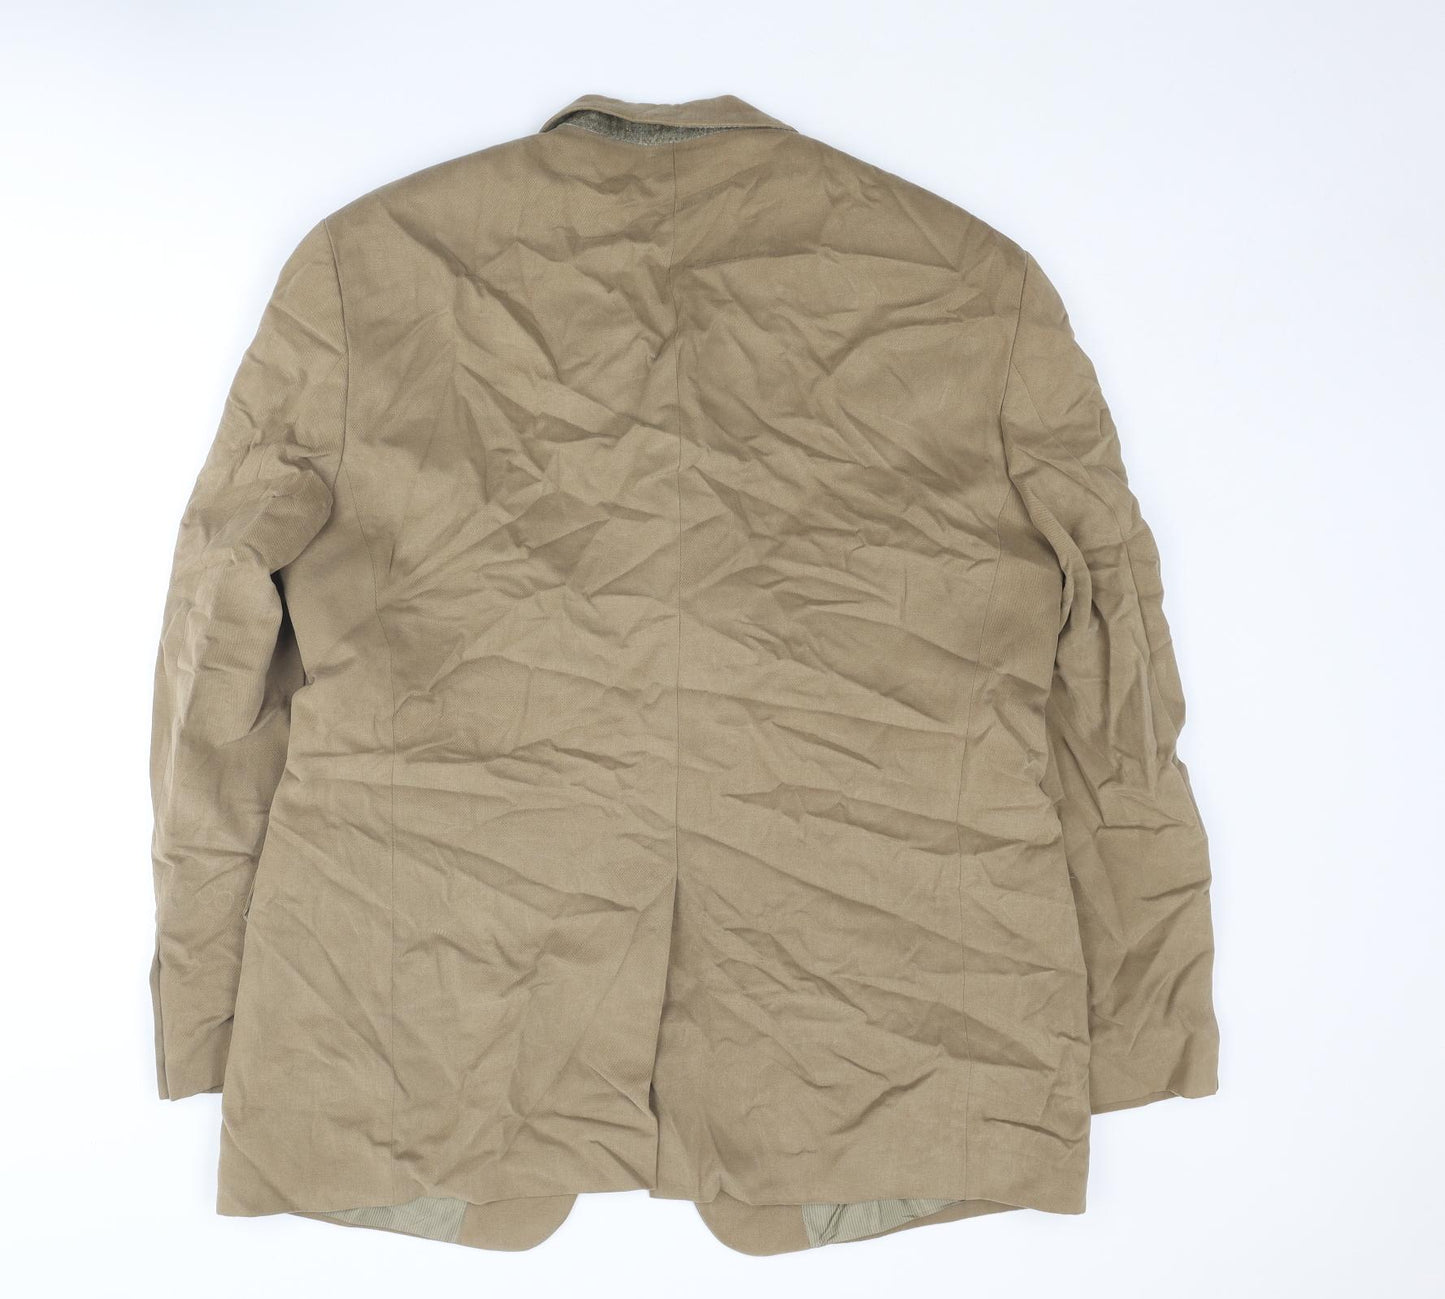 Marks and Spencer Mens Beige Cotton Jacket Suit Jacket Size 44 Regular